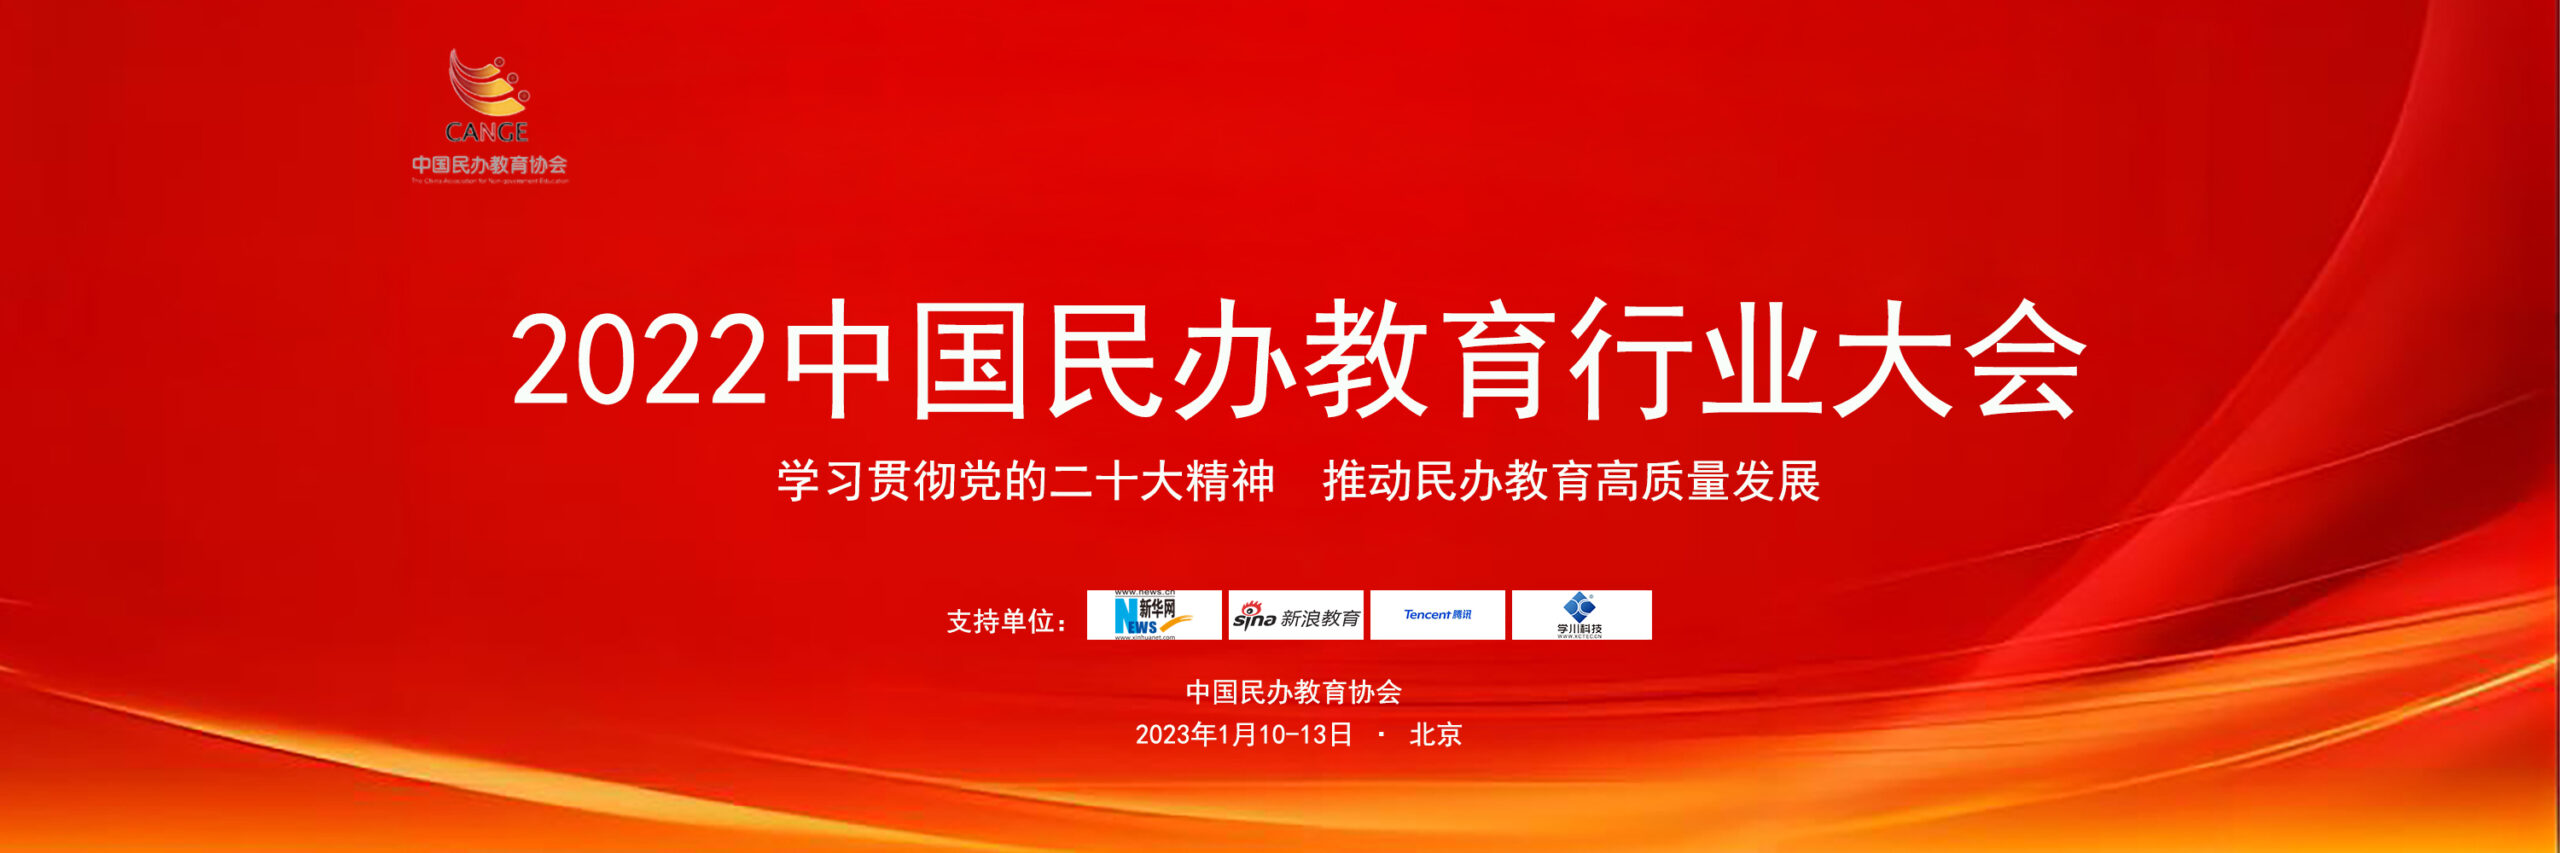 由中国民办教育协会主办、北京学川科技支持的“2022中国民办教育行业大会”在京举行